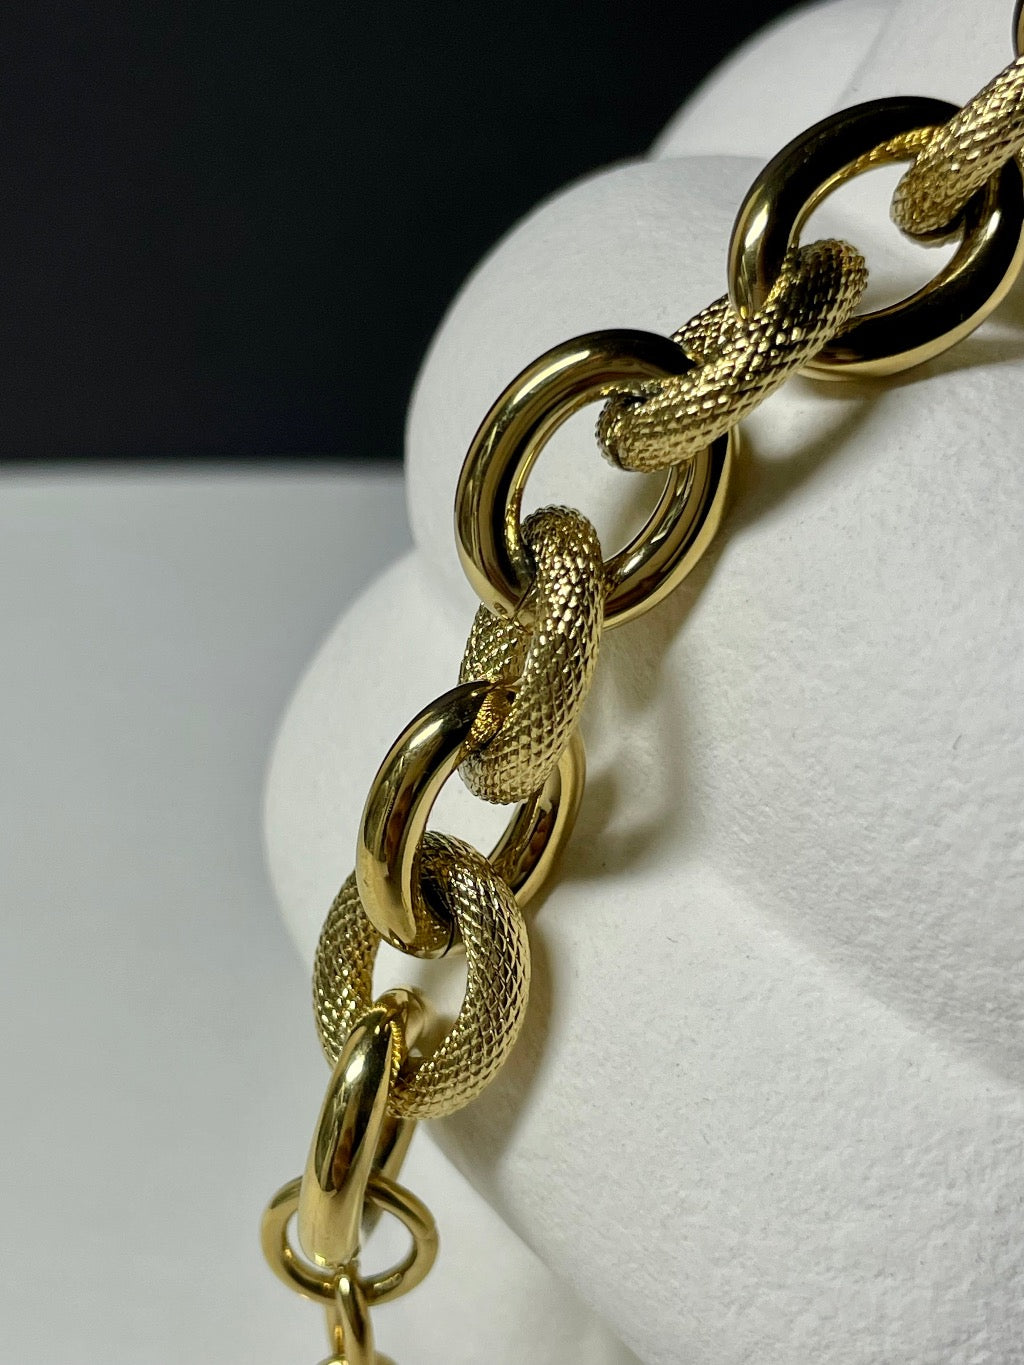 Edelstahl gold plattiertes Armband mit großen Gliedern.